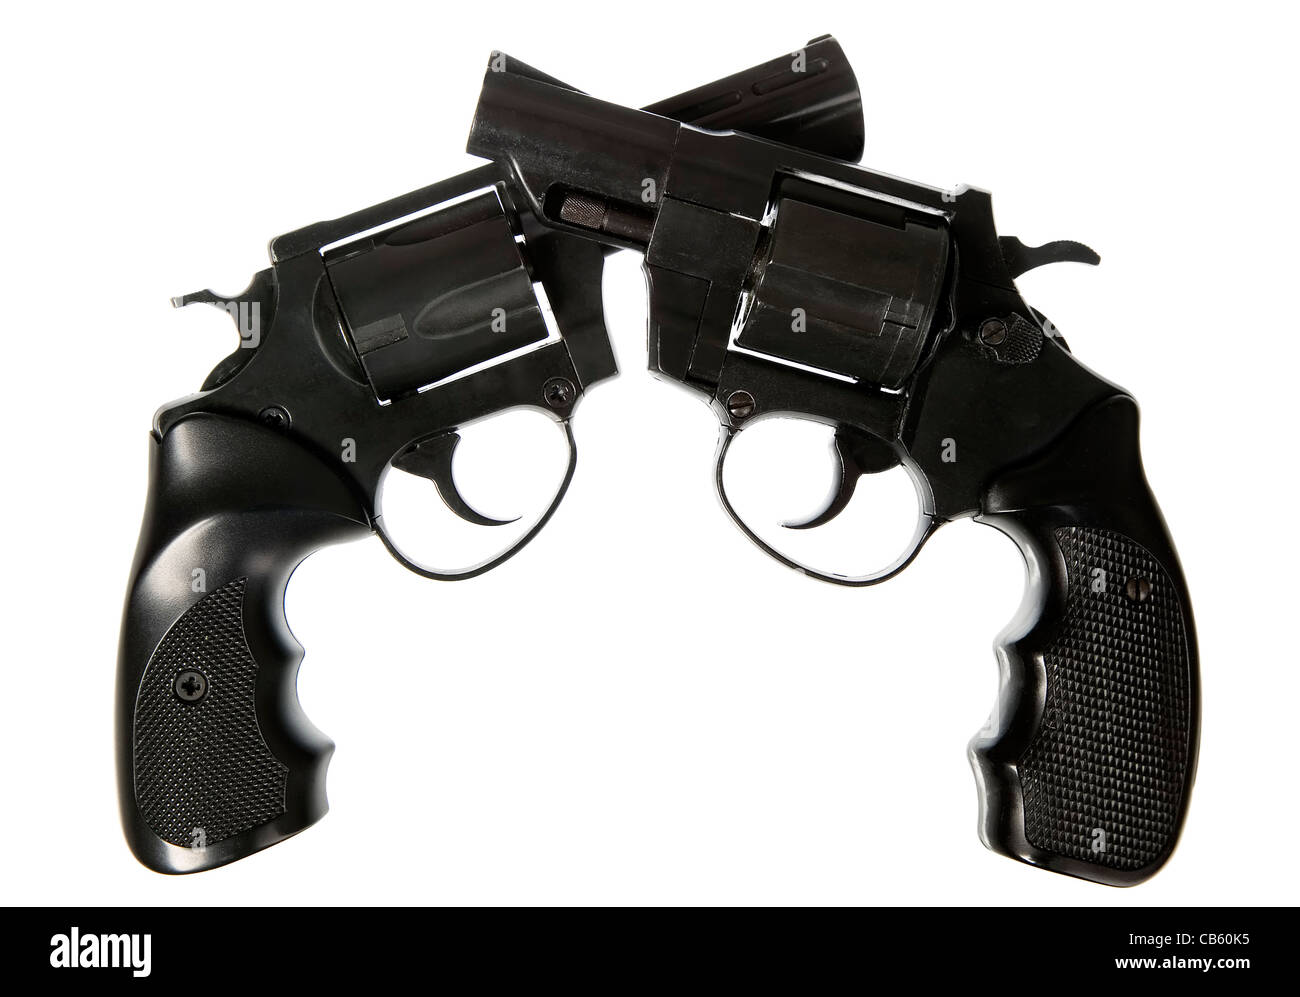 Pistola de negro sobre fondo blanco, peligrosa y concepto de seguridad Foto de stock